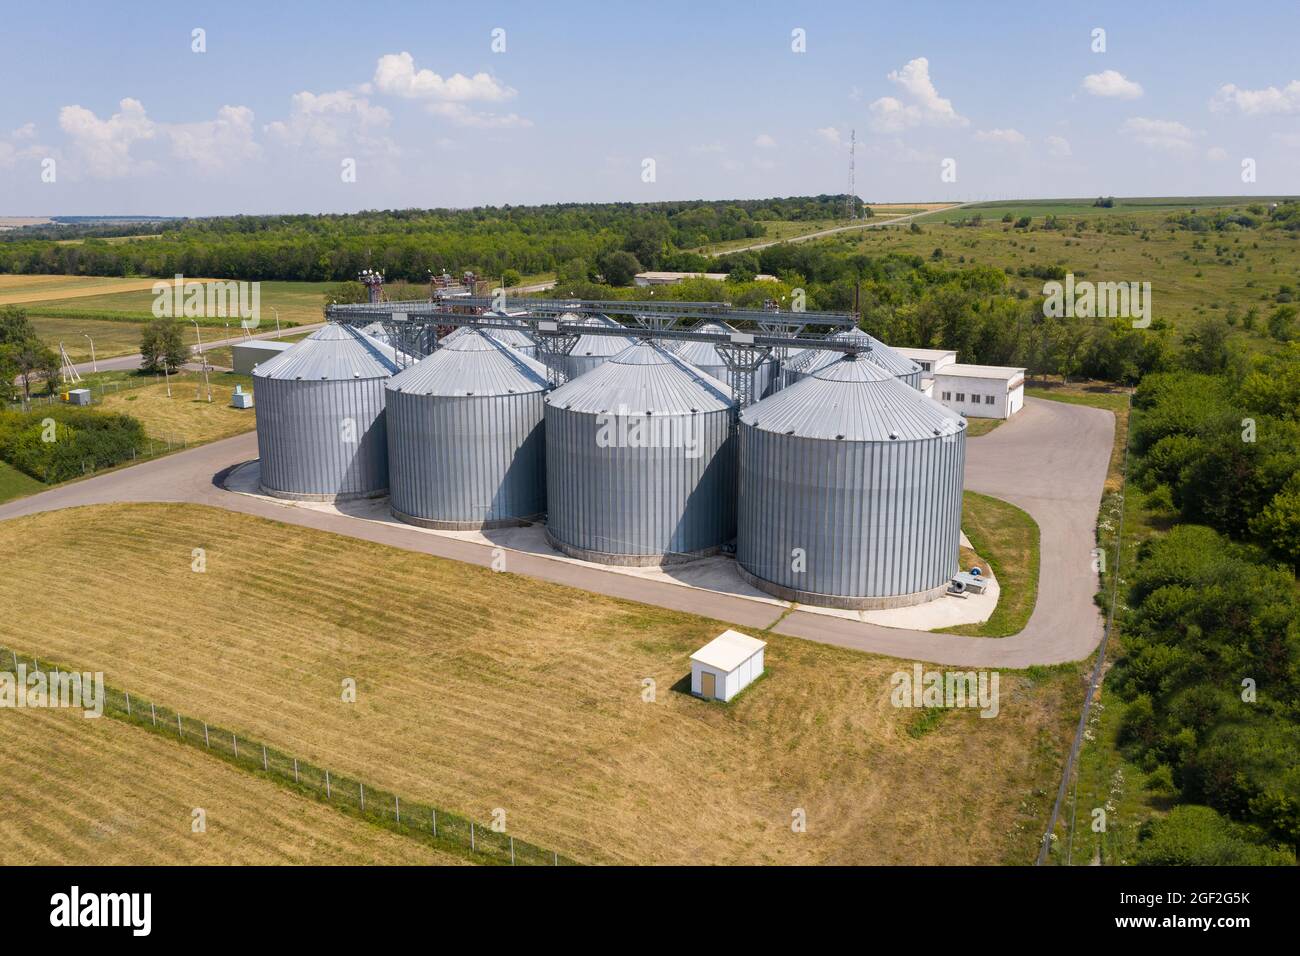 Luftaufnahme von landwirtschaftlichen Silos, Getreideaufzug zur Lagerung und Trocknung von Getreide Stockfoto